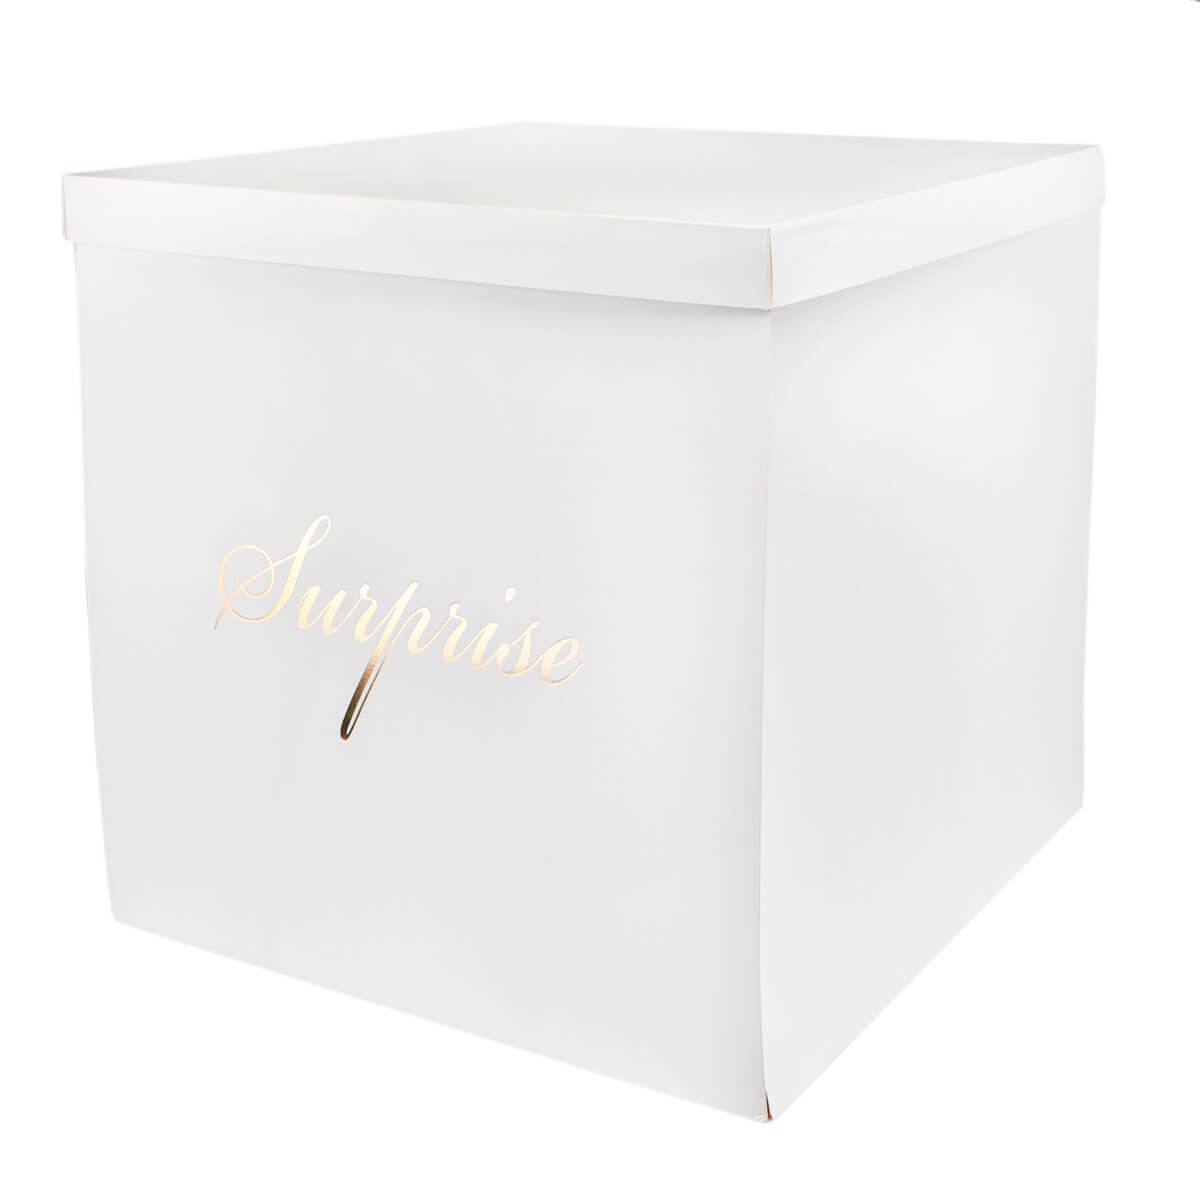 Коробка "Большой сюрприз" 70*70, белая (8916-008-1), Картон, Elisey